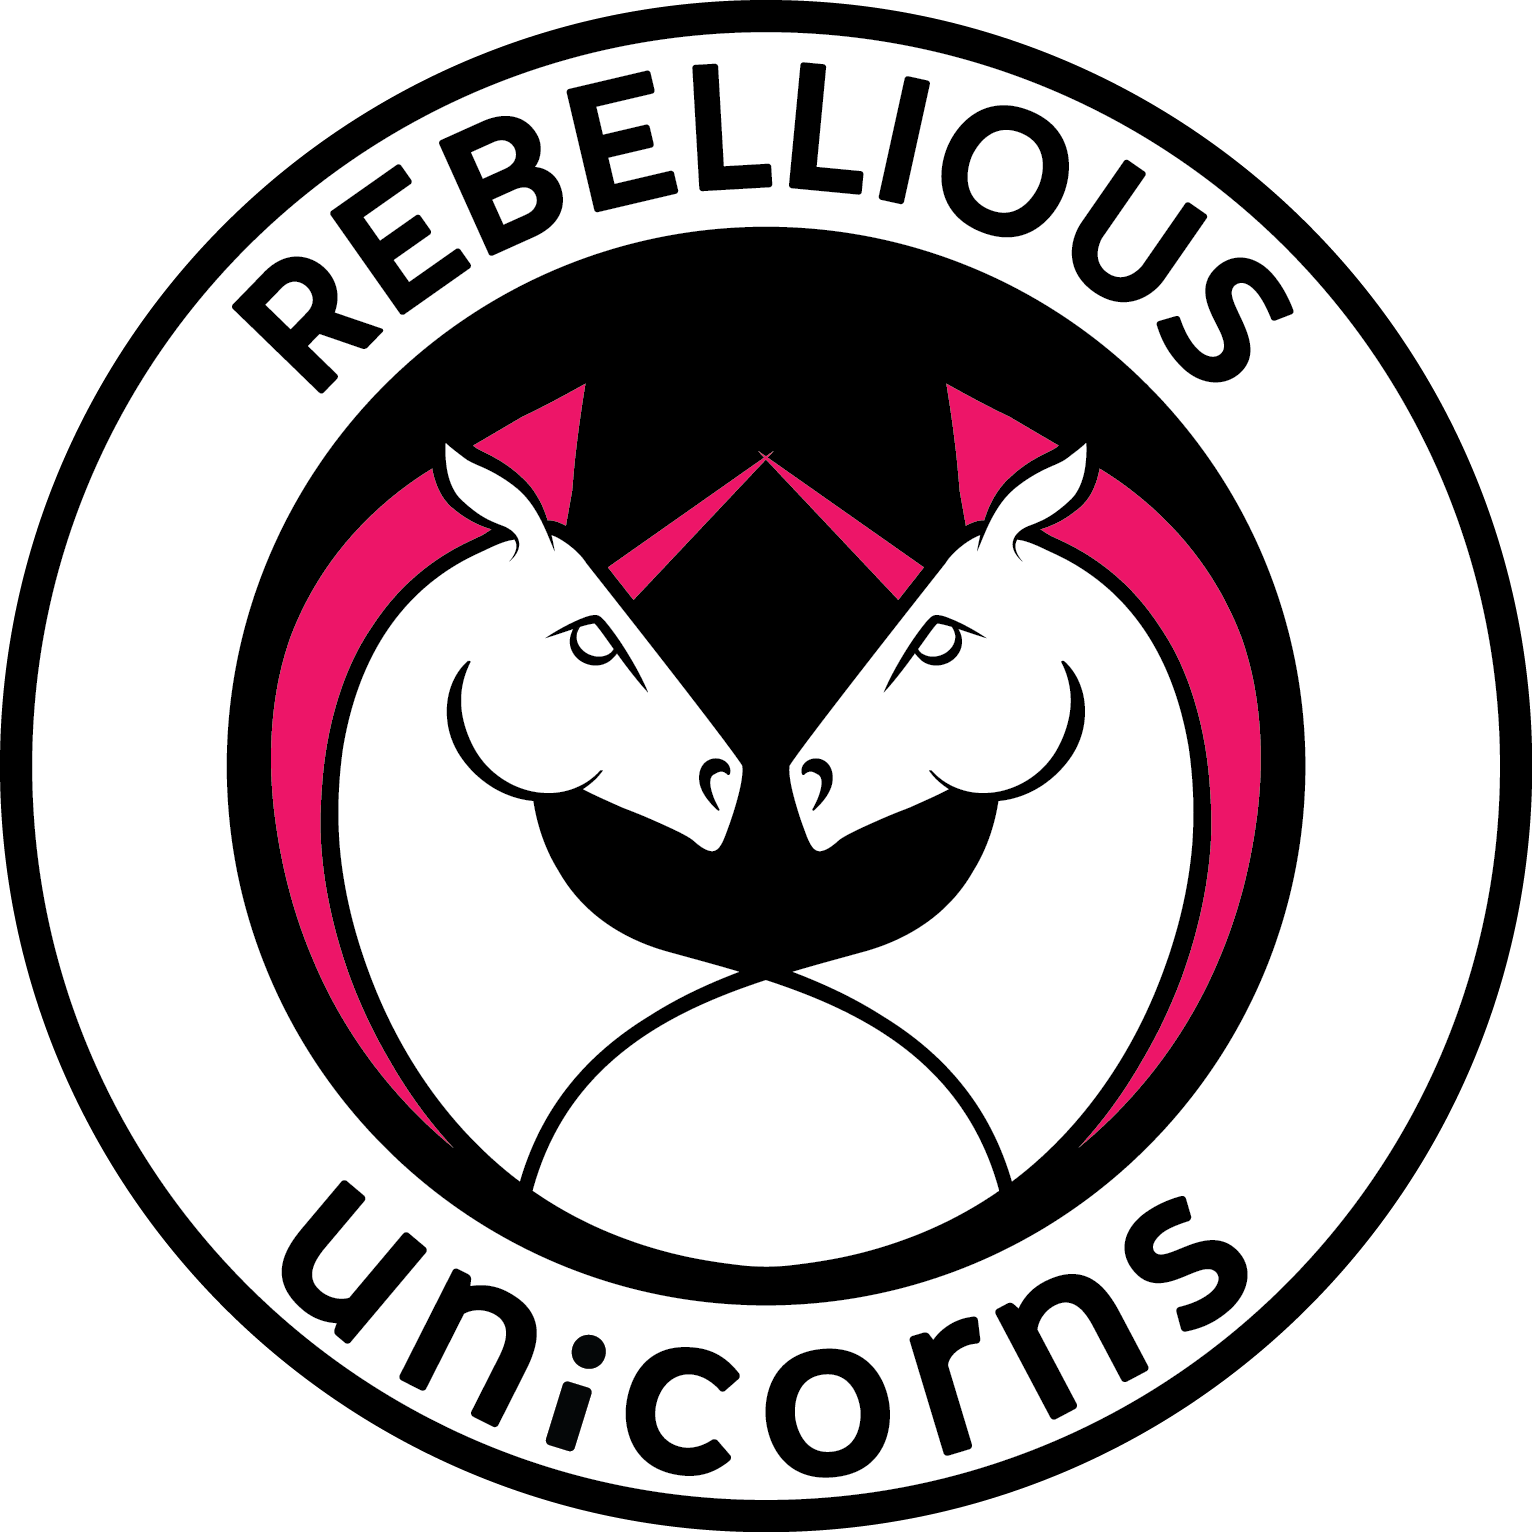 Rebellious Unicorns